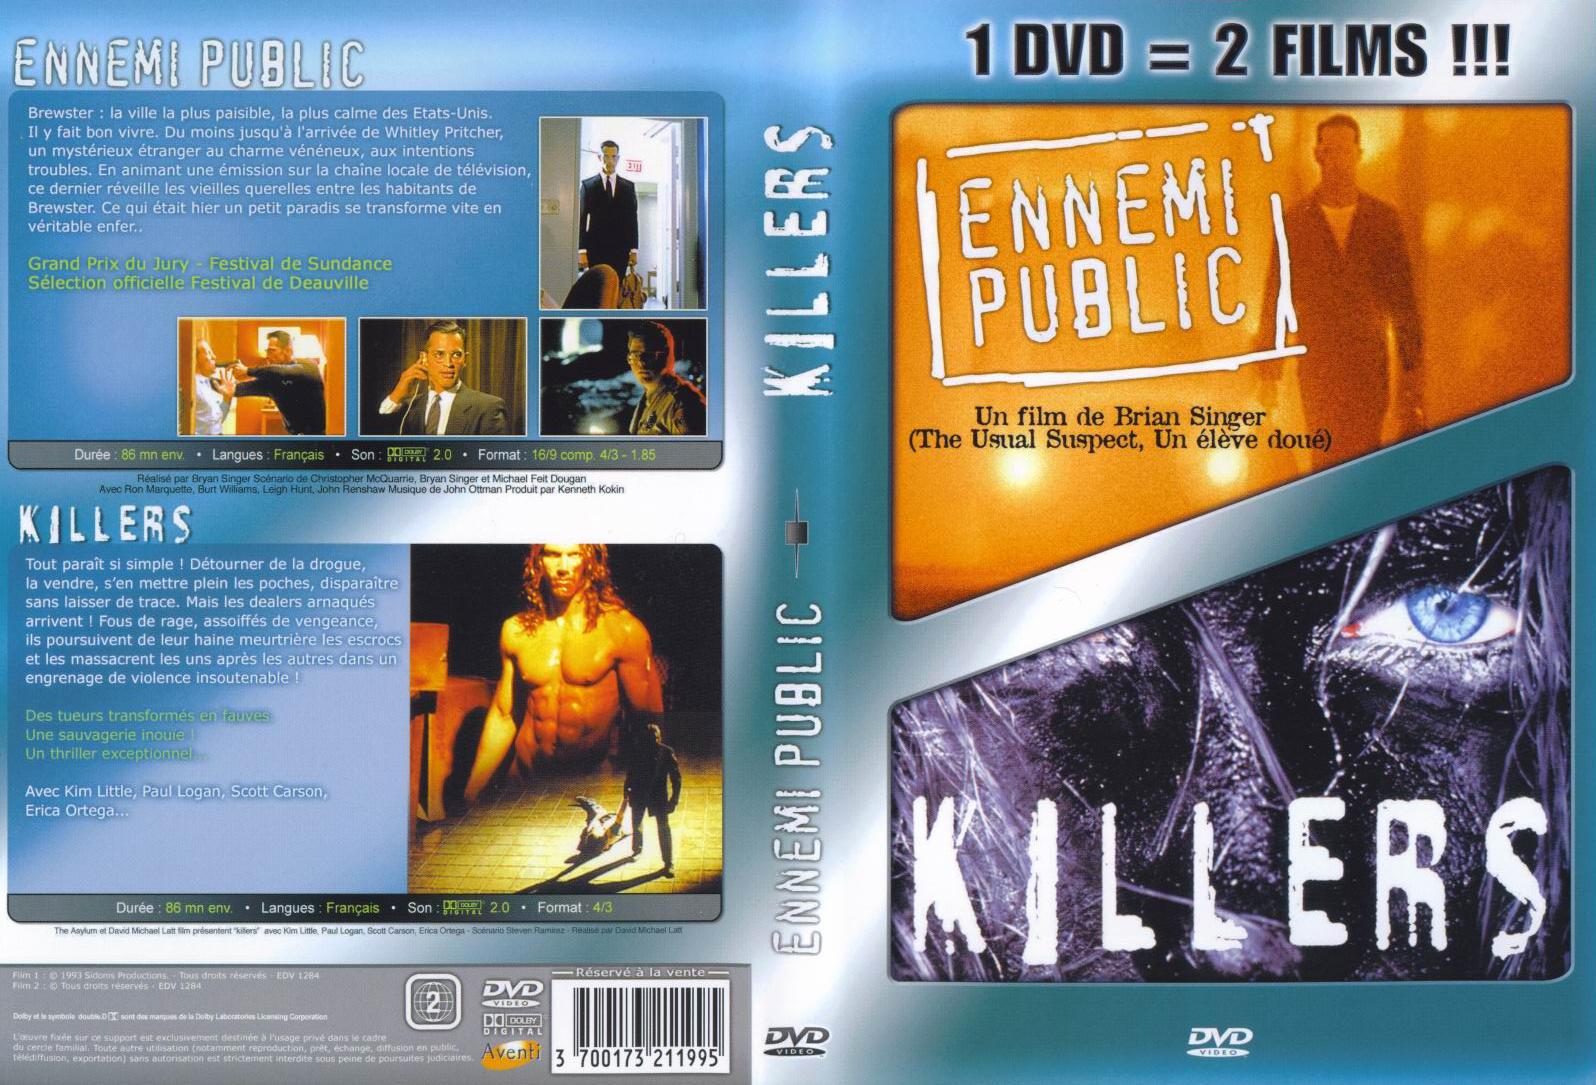 Jaquette DVD Ennemi public + killers